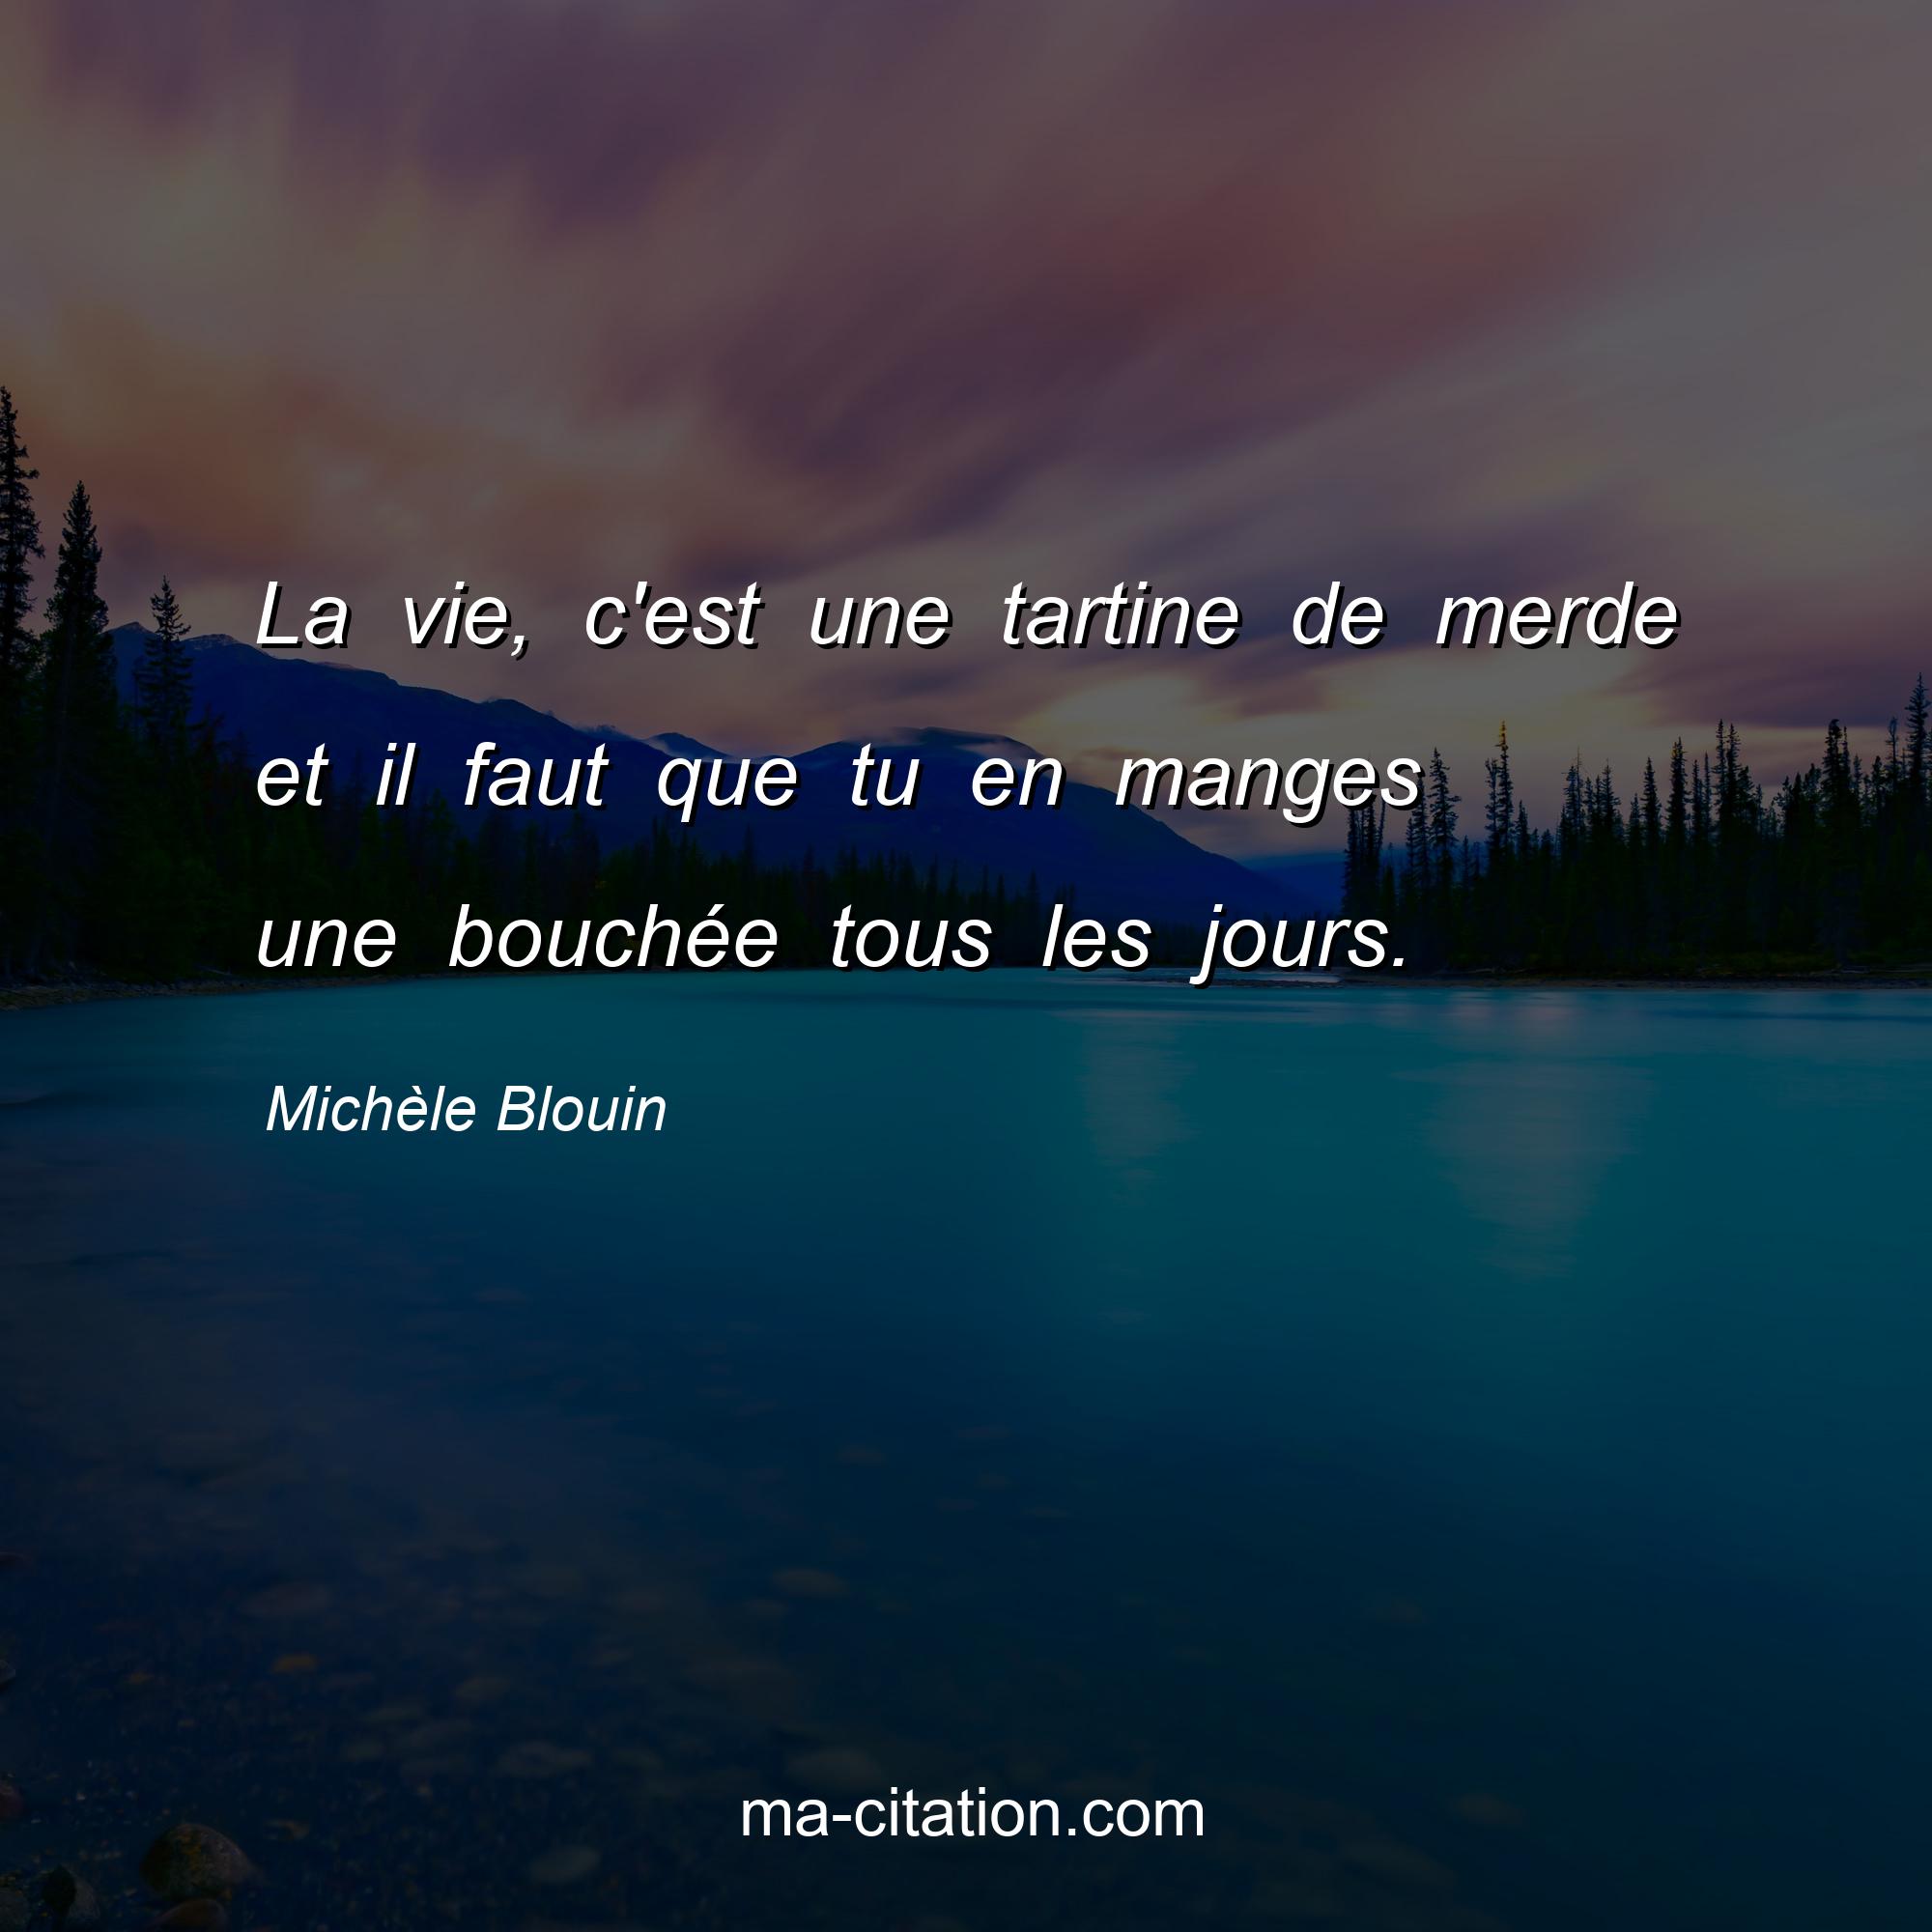 Michèle Blouin : La vie, c'est une tartine de merde et il faut que tu en manges une bouchée tous les jours.